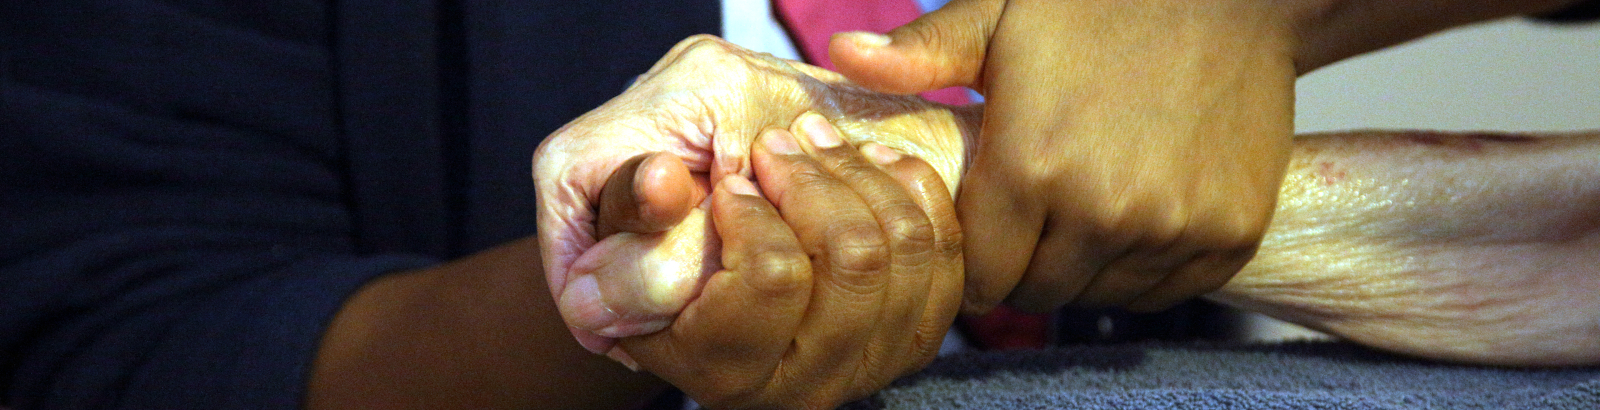 Une femme accompagne une personne âgée en lui tenant la main. Image pour article don sur succession